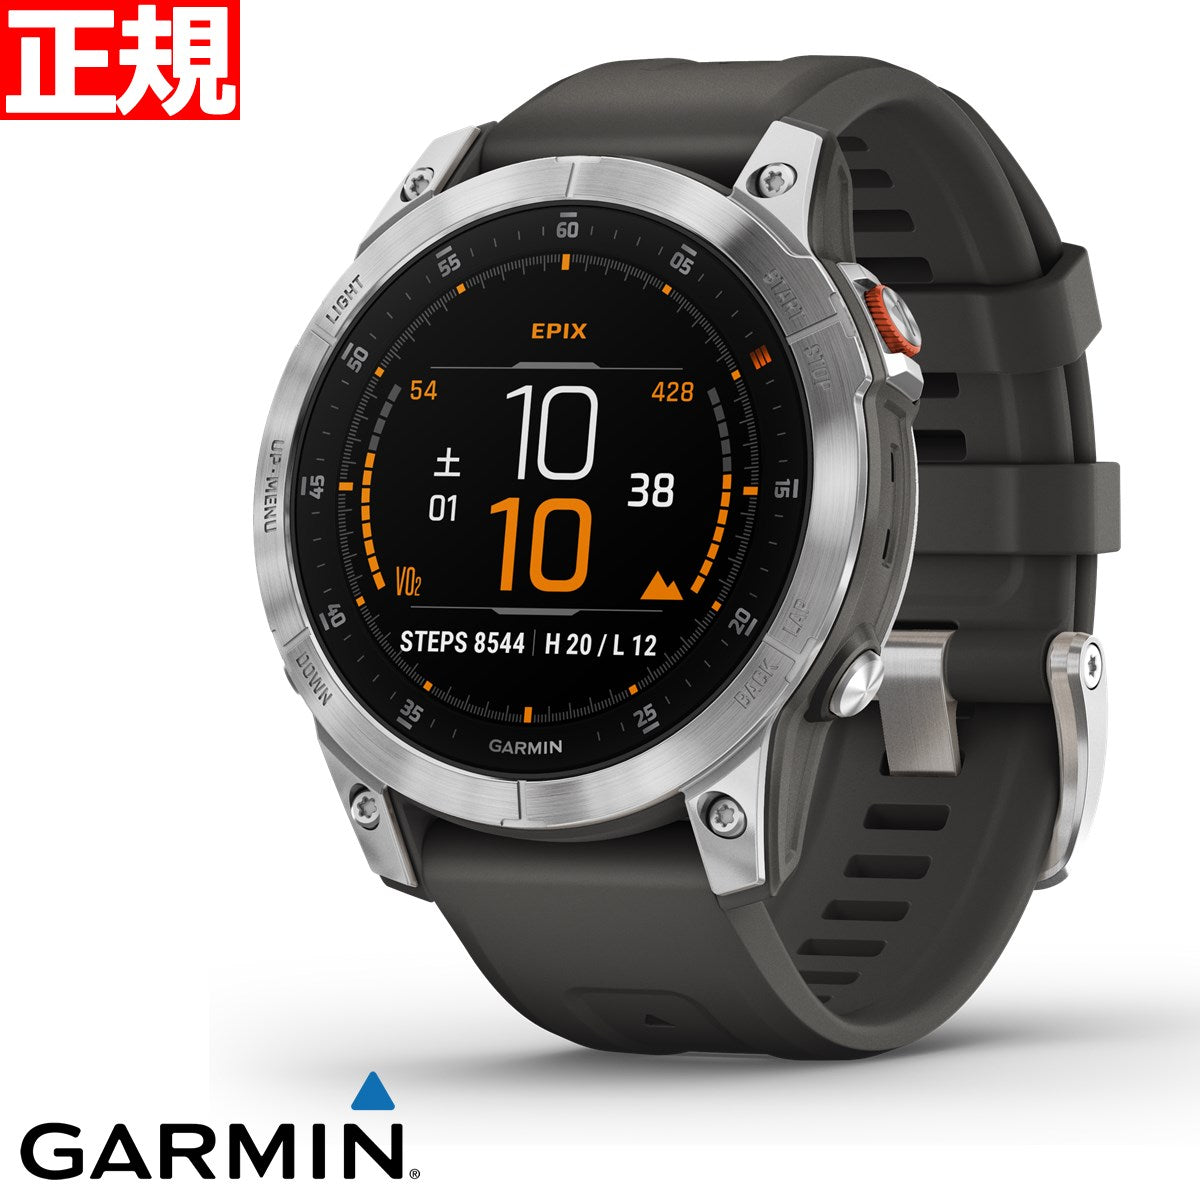 【特価販売】ガーミン GARMIN epix Steel Graphite エピックス マルチスポーツ GPS スマートウォッチ ウェアラブル 腕時計 010-02582-05